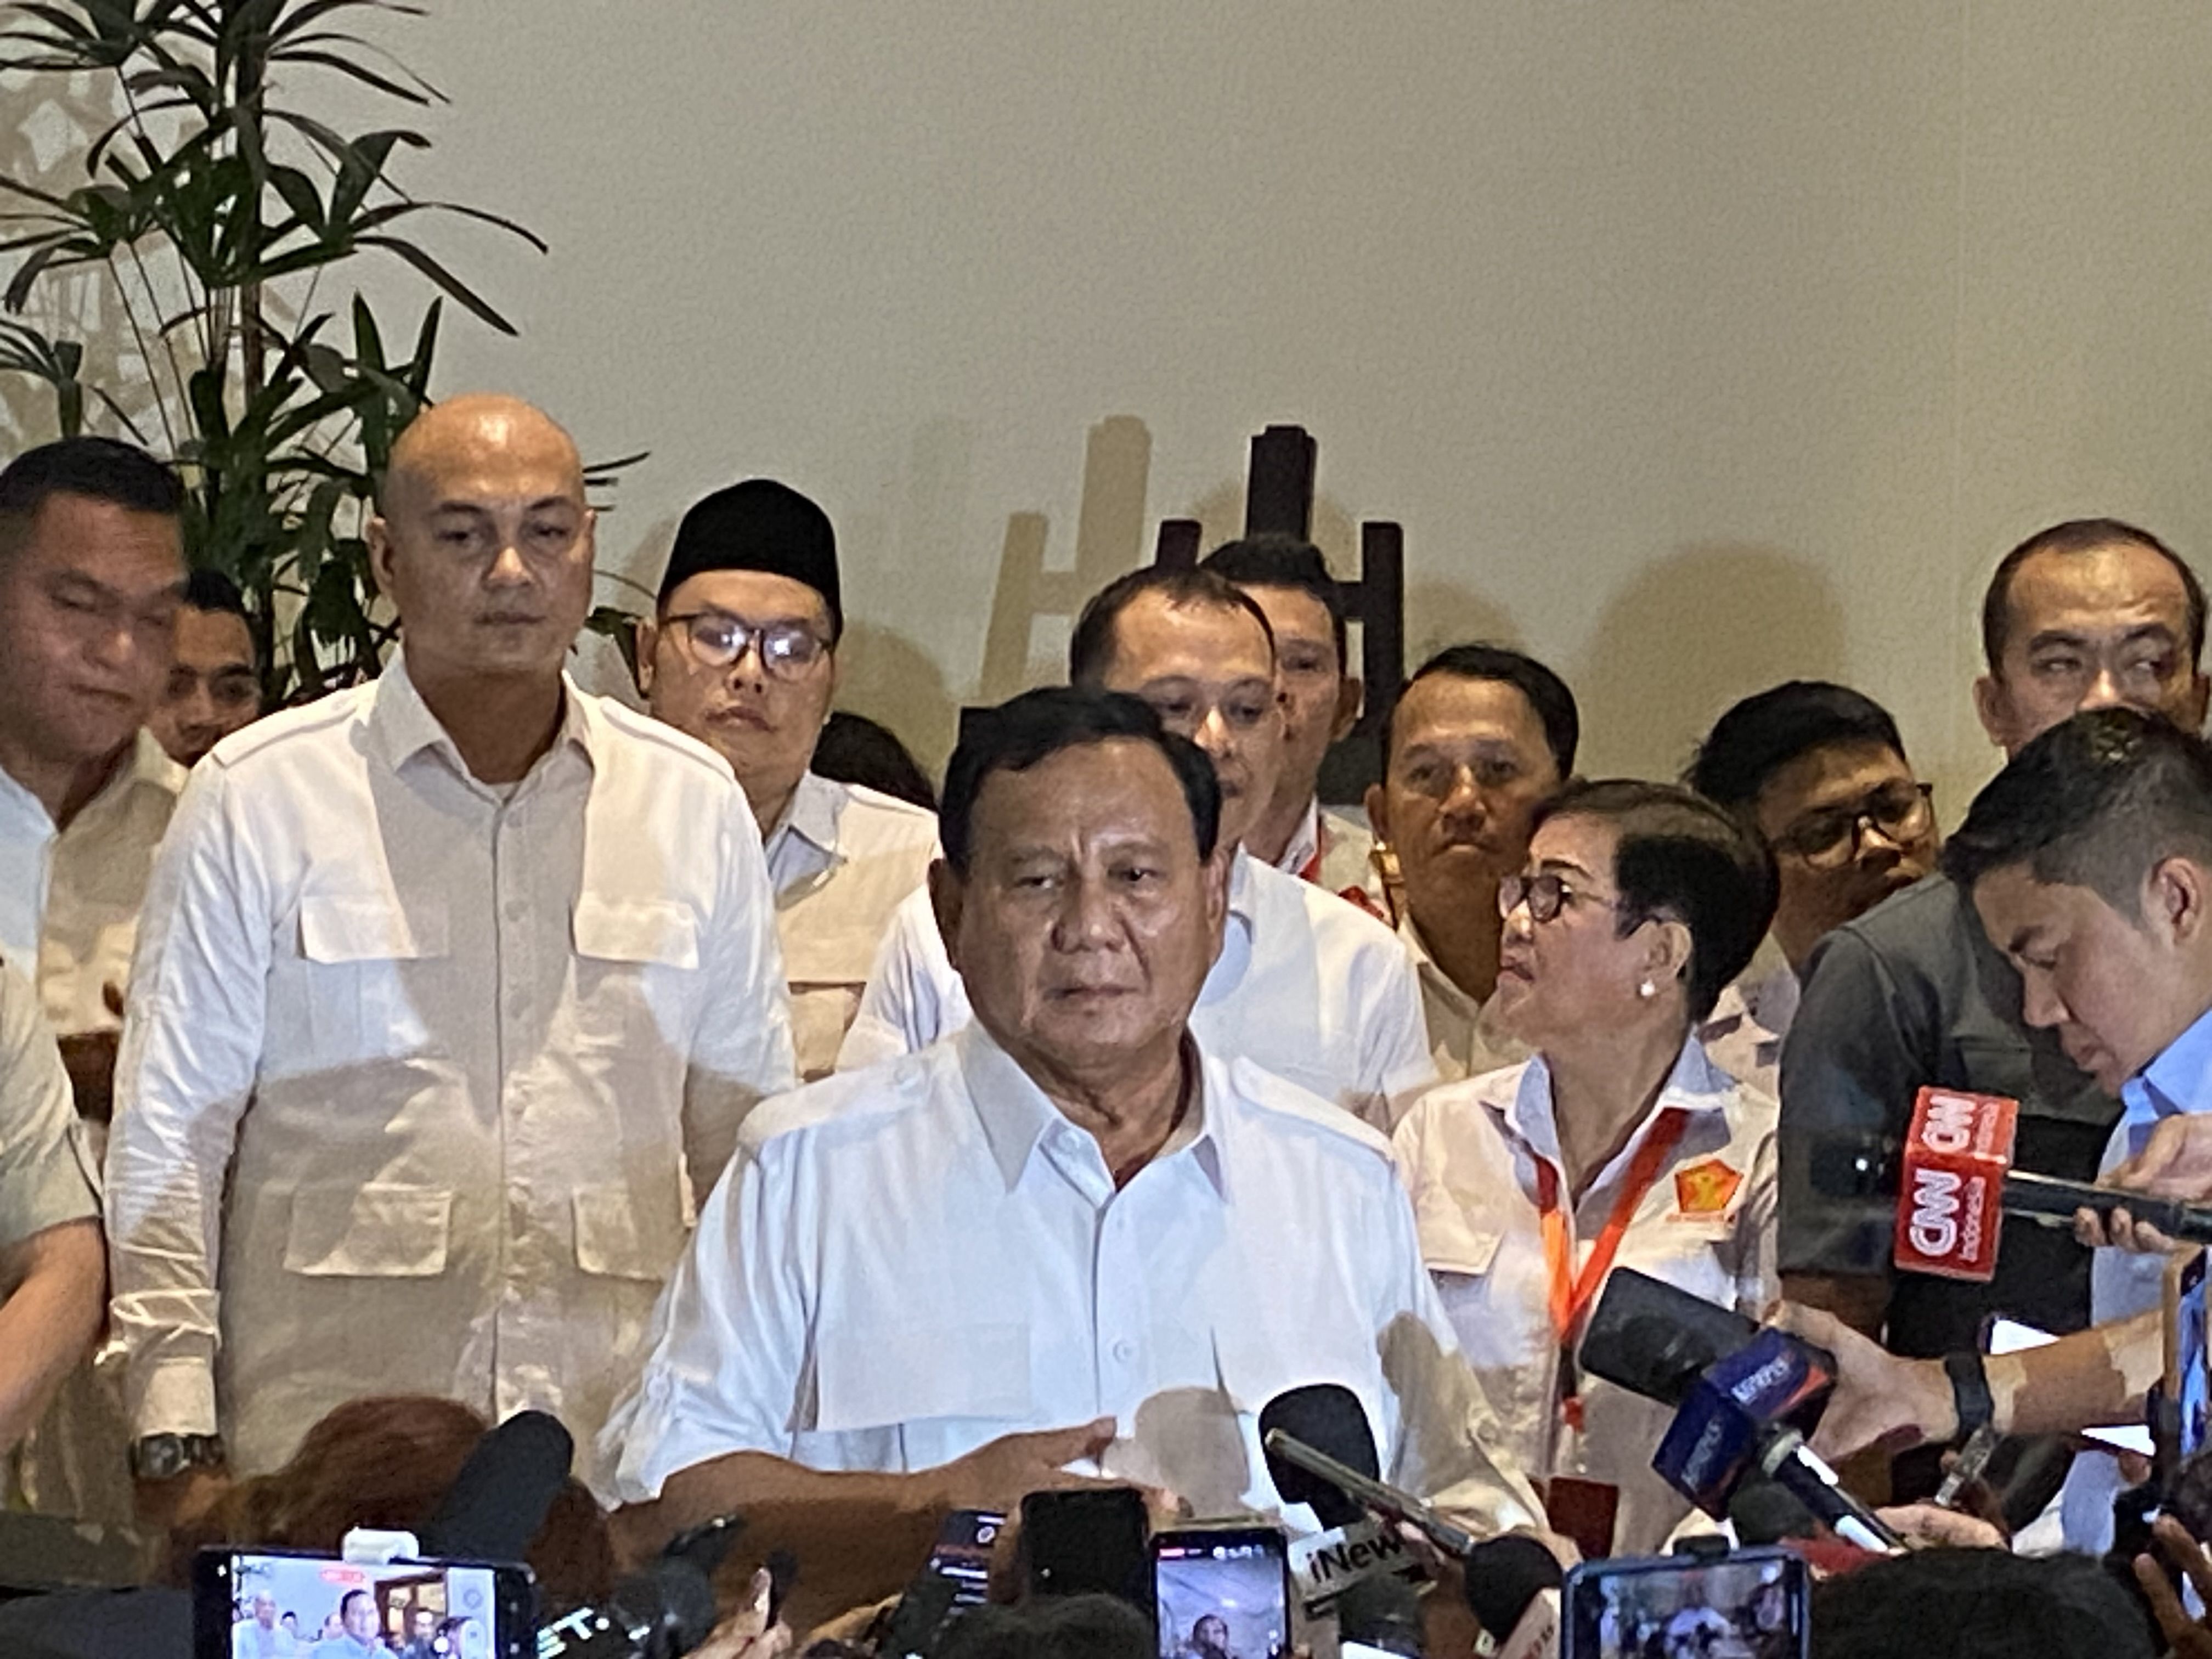 Koalisi Pengusung Prabowo-Gibran Minta Maaf jika Aktivitas Warga Terganggu Pendaftaran ke KPU